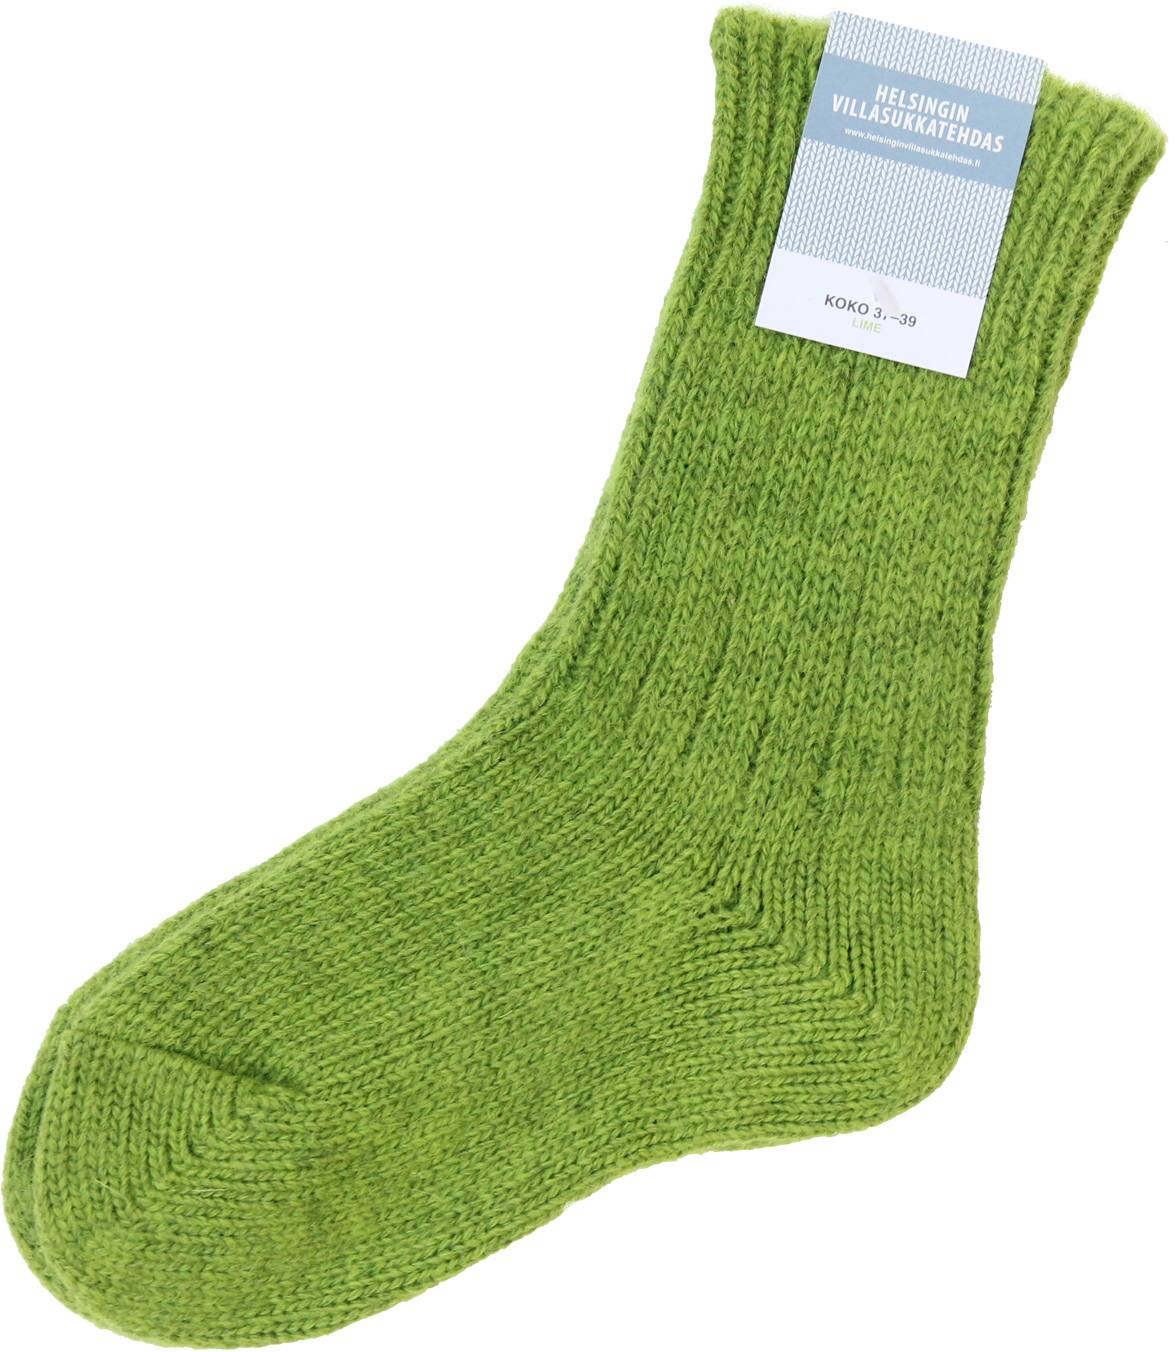 Wool socks Lime 40-42